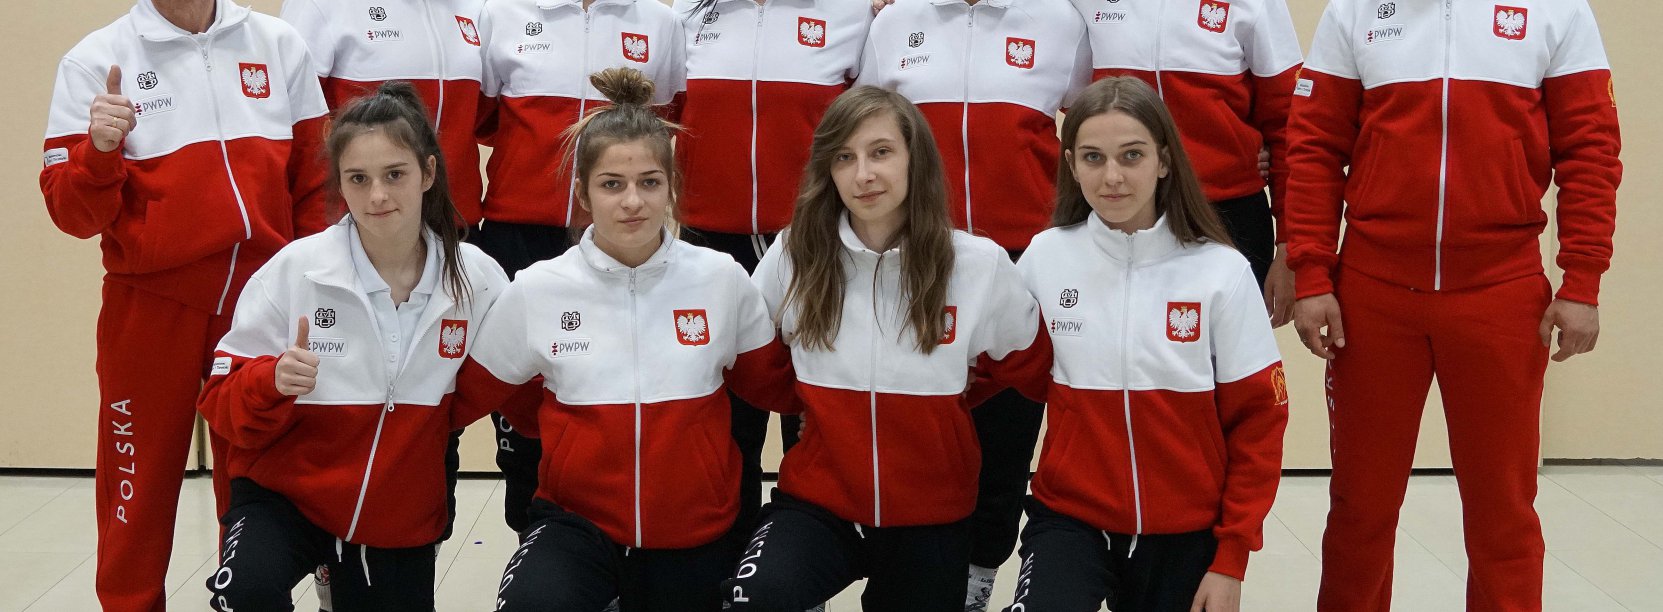 Grupa młodych osób ubrana w dresy w barwach flagi Polski 